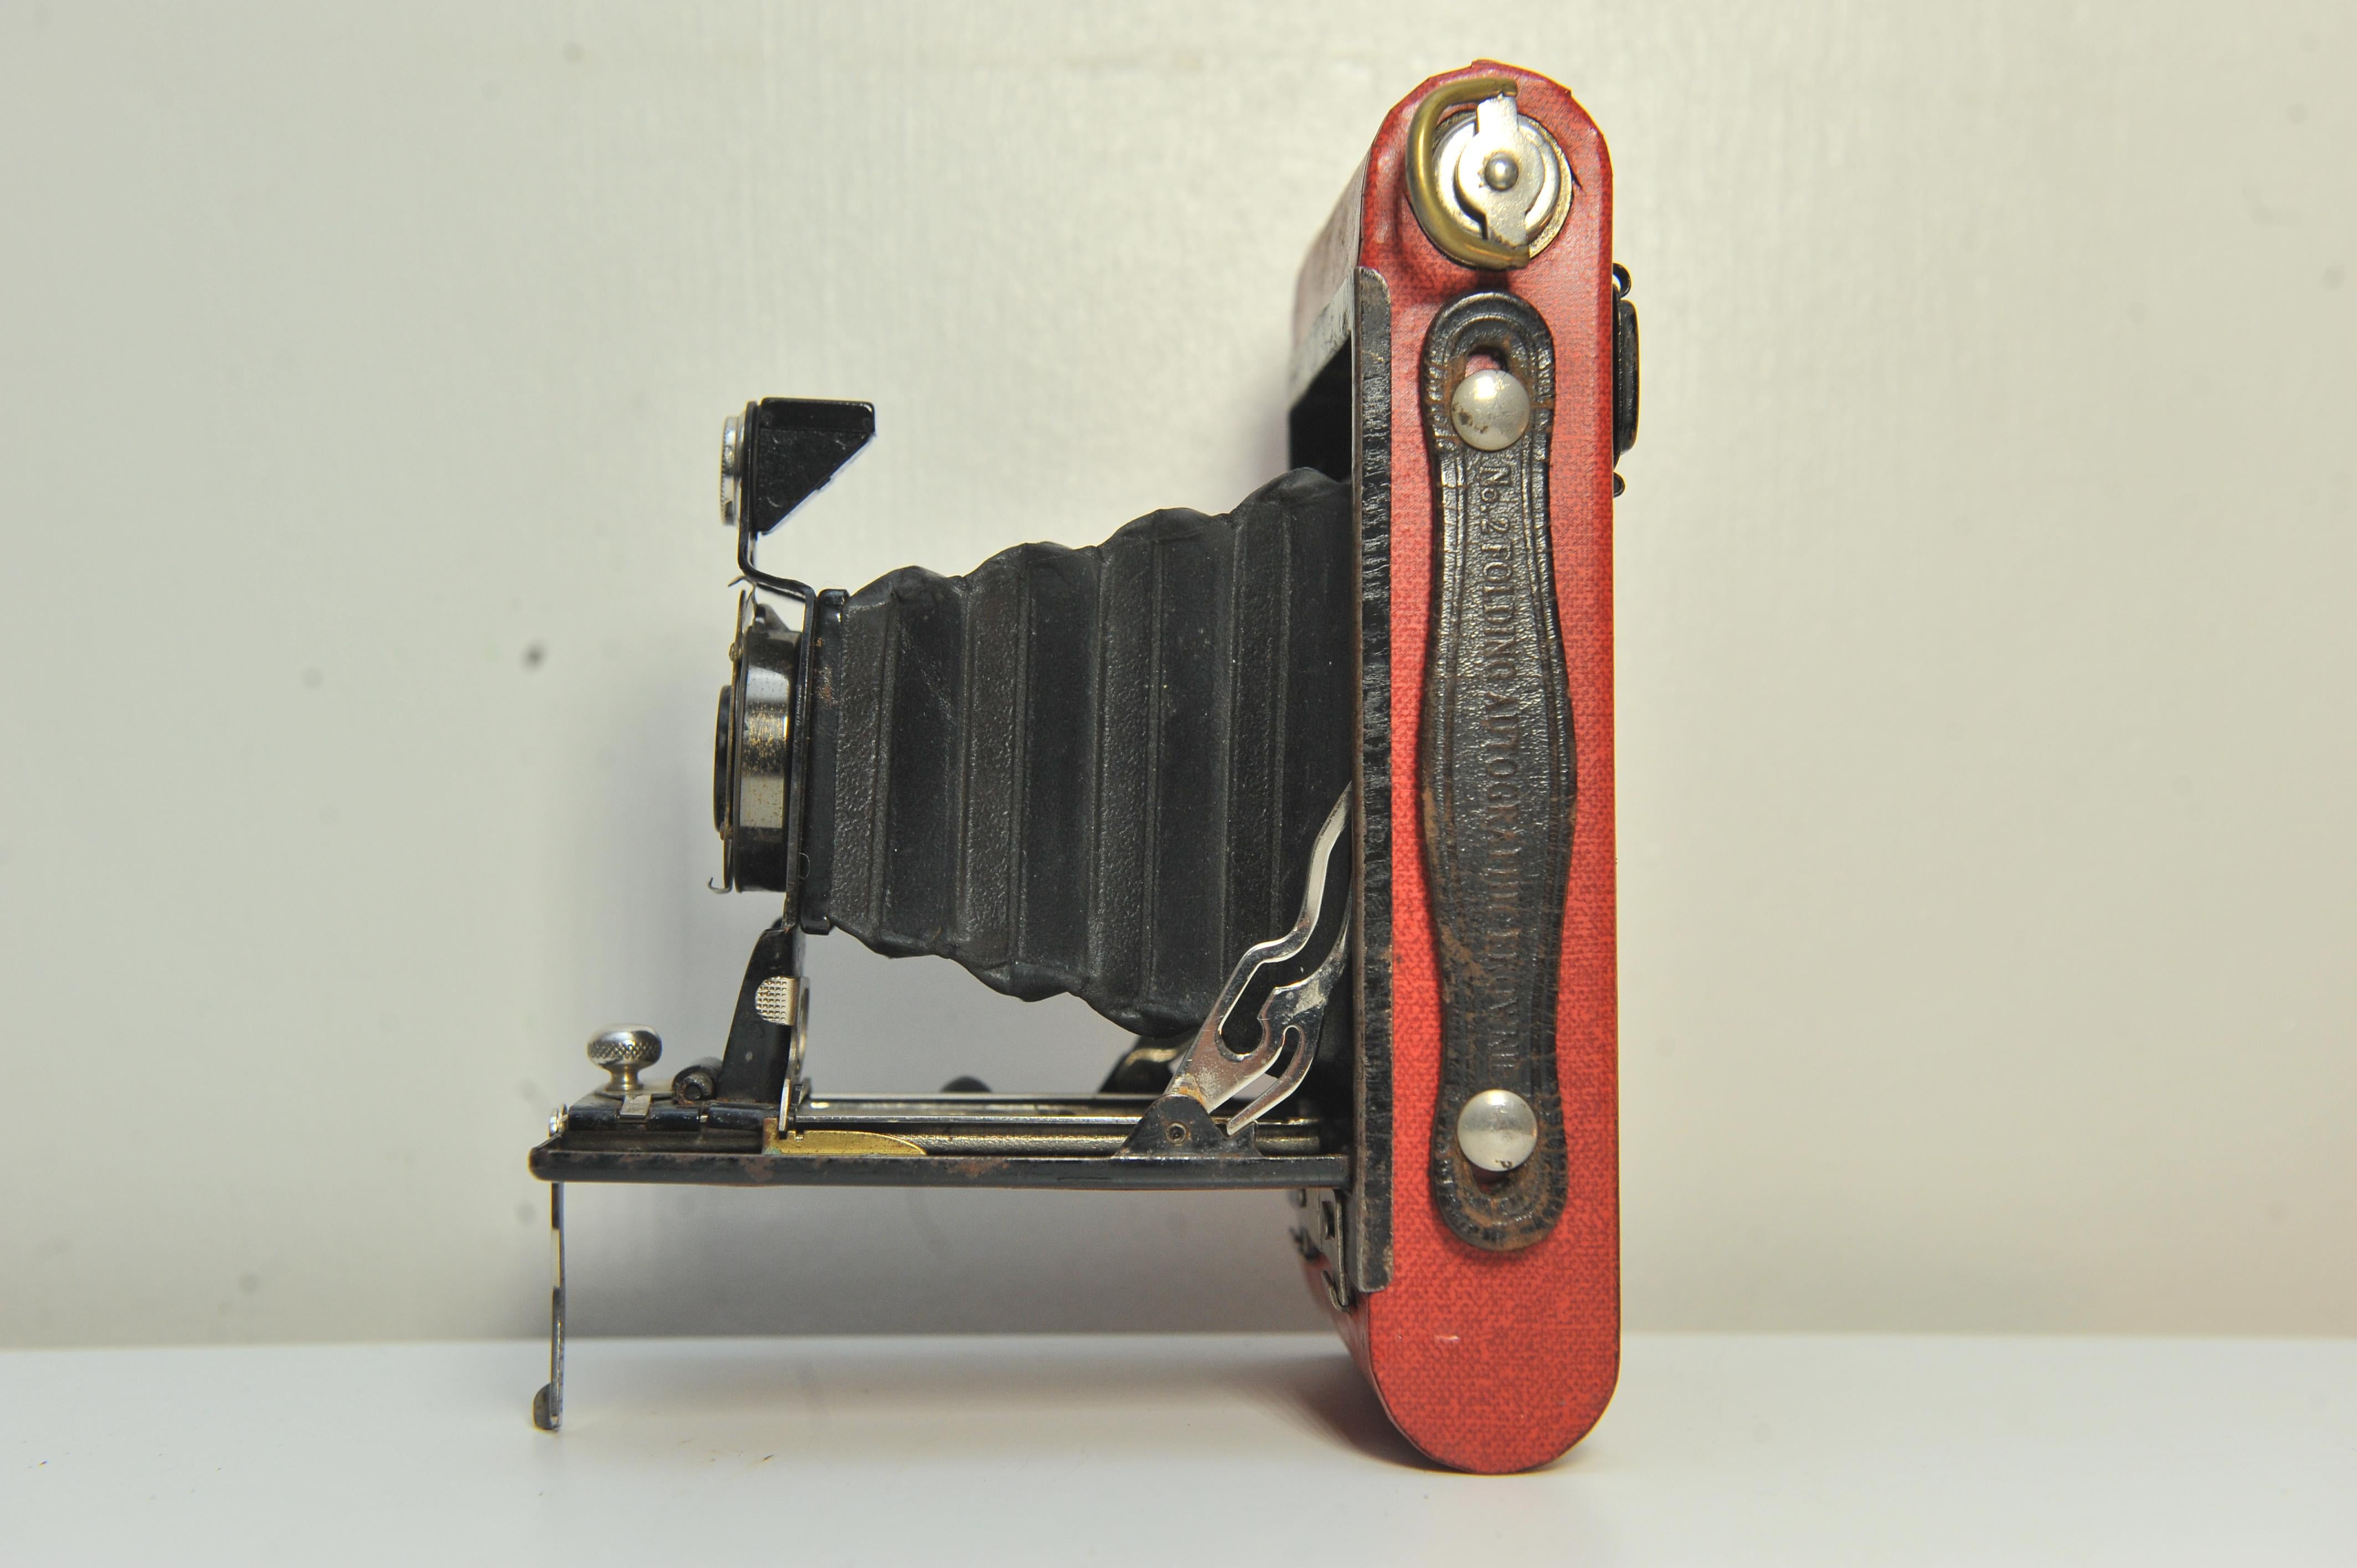 Eastman Kodak No 2 Folding Autographic Brownie Folding Bellows Camera In Red

Fabriqué entre 1915 et 1926
Accepte les pellicules de 120
Avec obturateur à roulement à billes Kodak 
